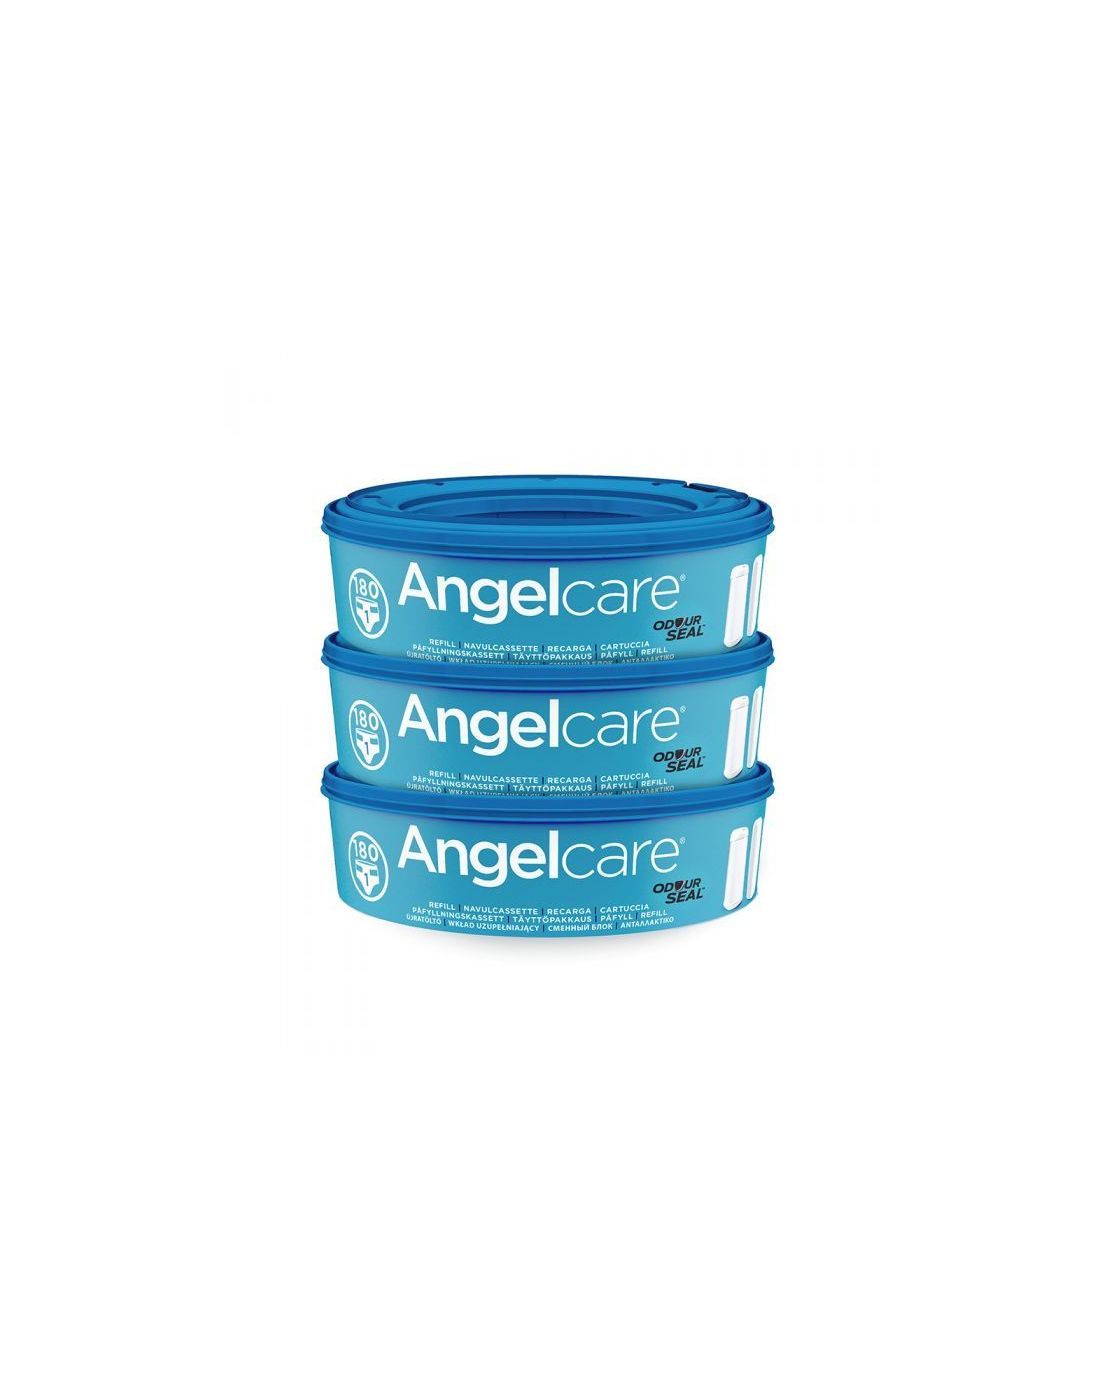 Angelcare Pack of 3 Refill Cassettte